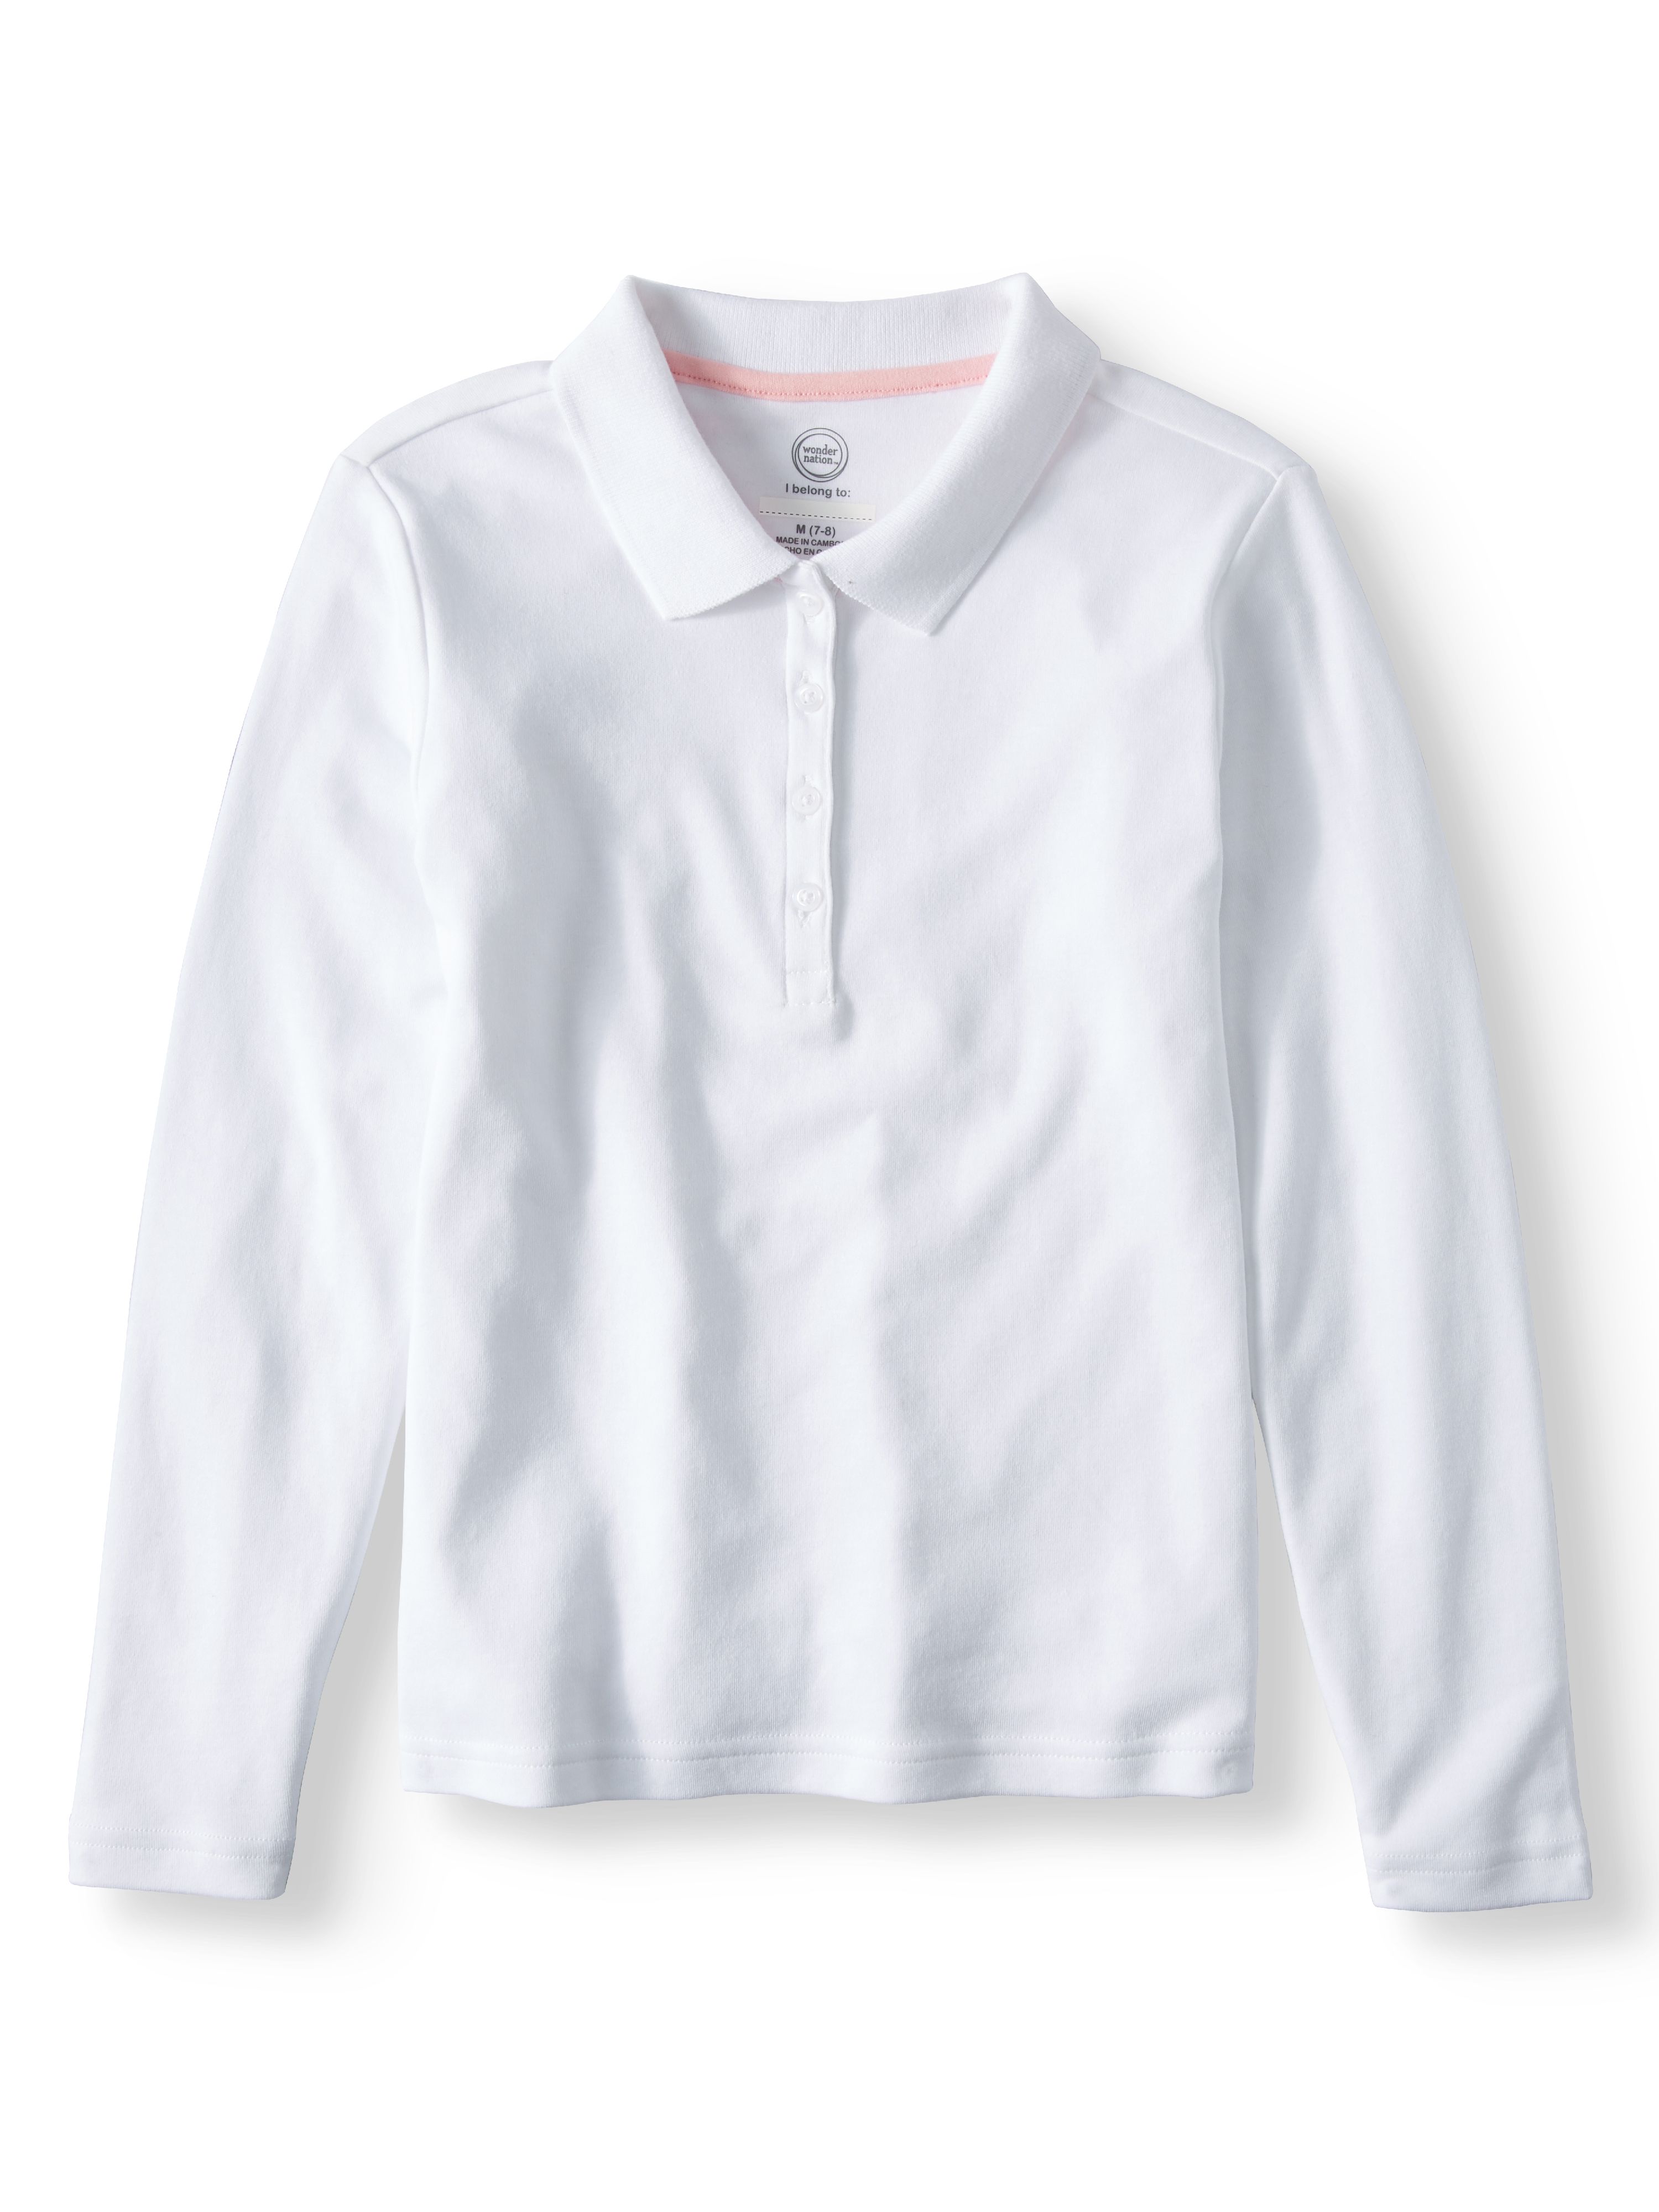 Wonder Nation Girls School Uniform Long Sleeve Interlock Polo Shirt, 4-Pack Value Bundle, Sizes 4-18 - image 2 of 7